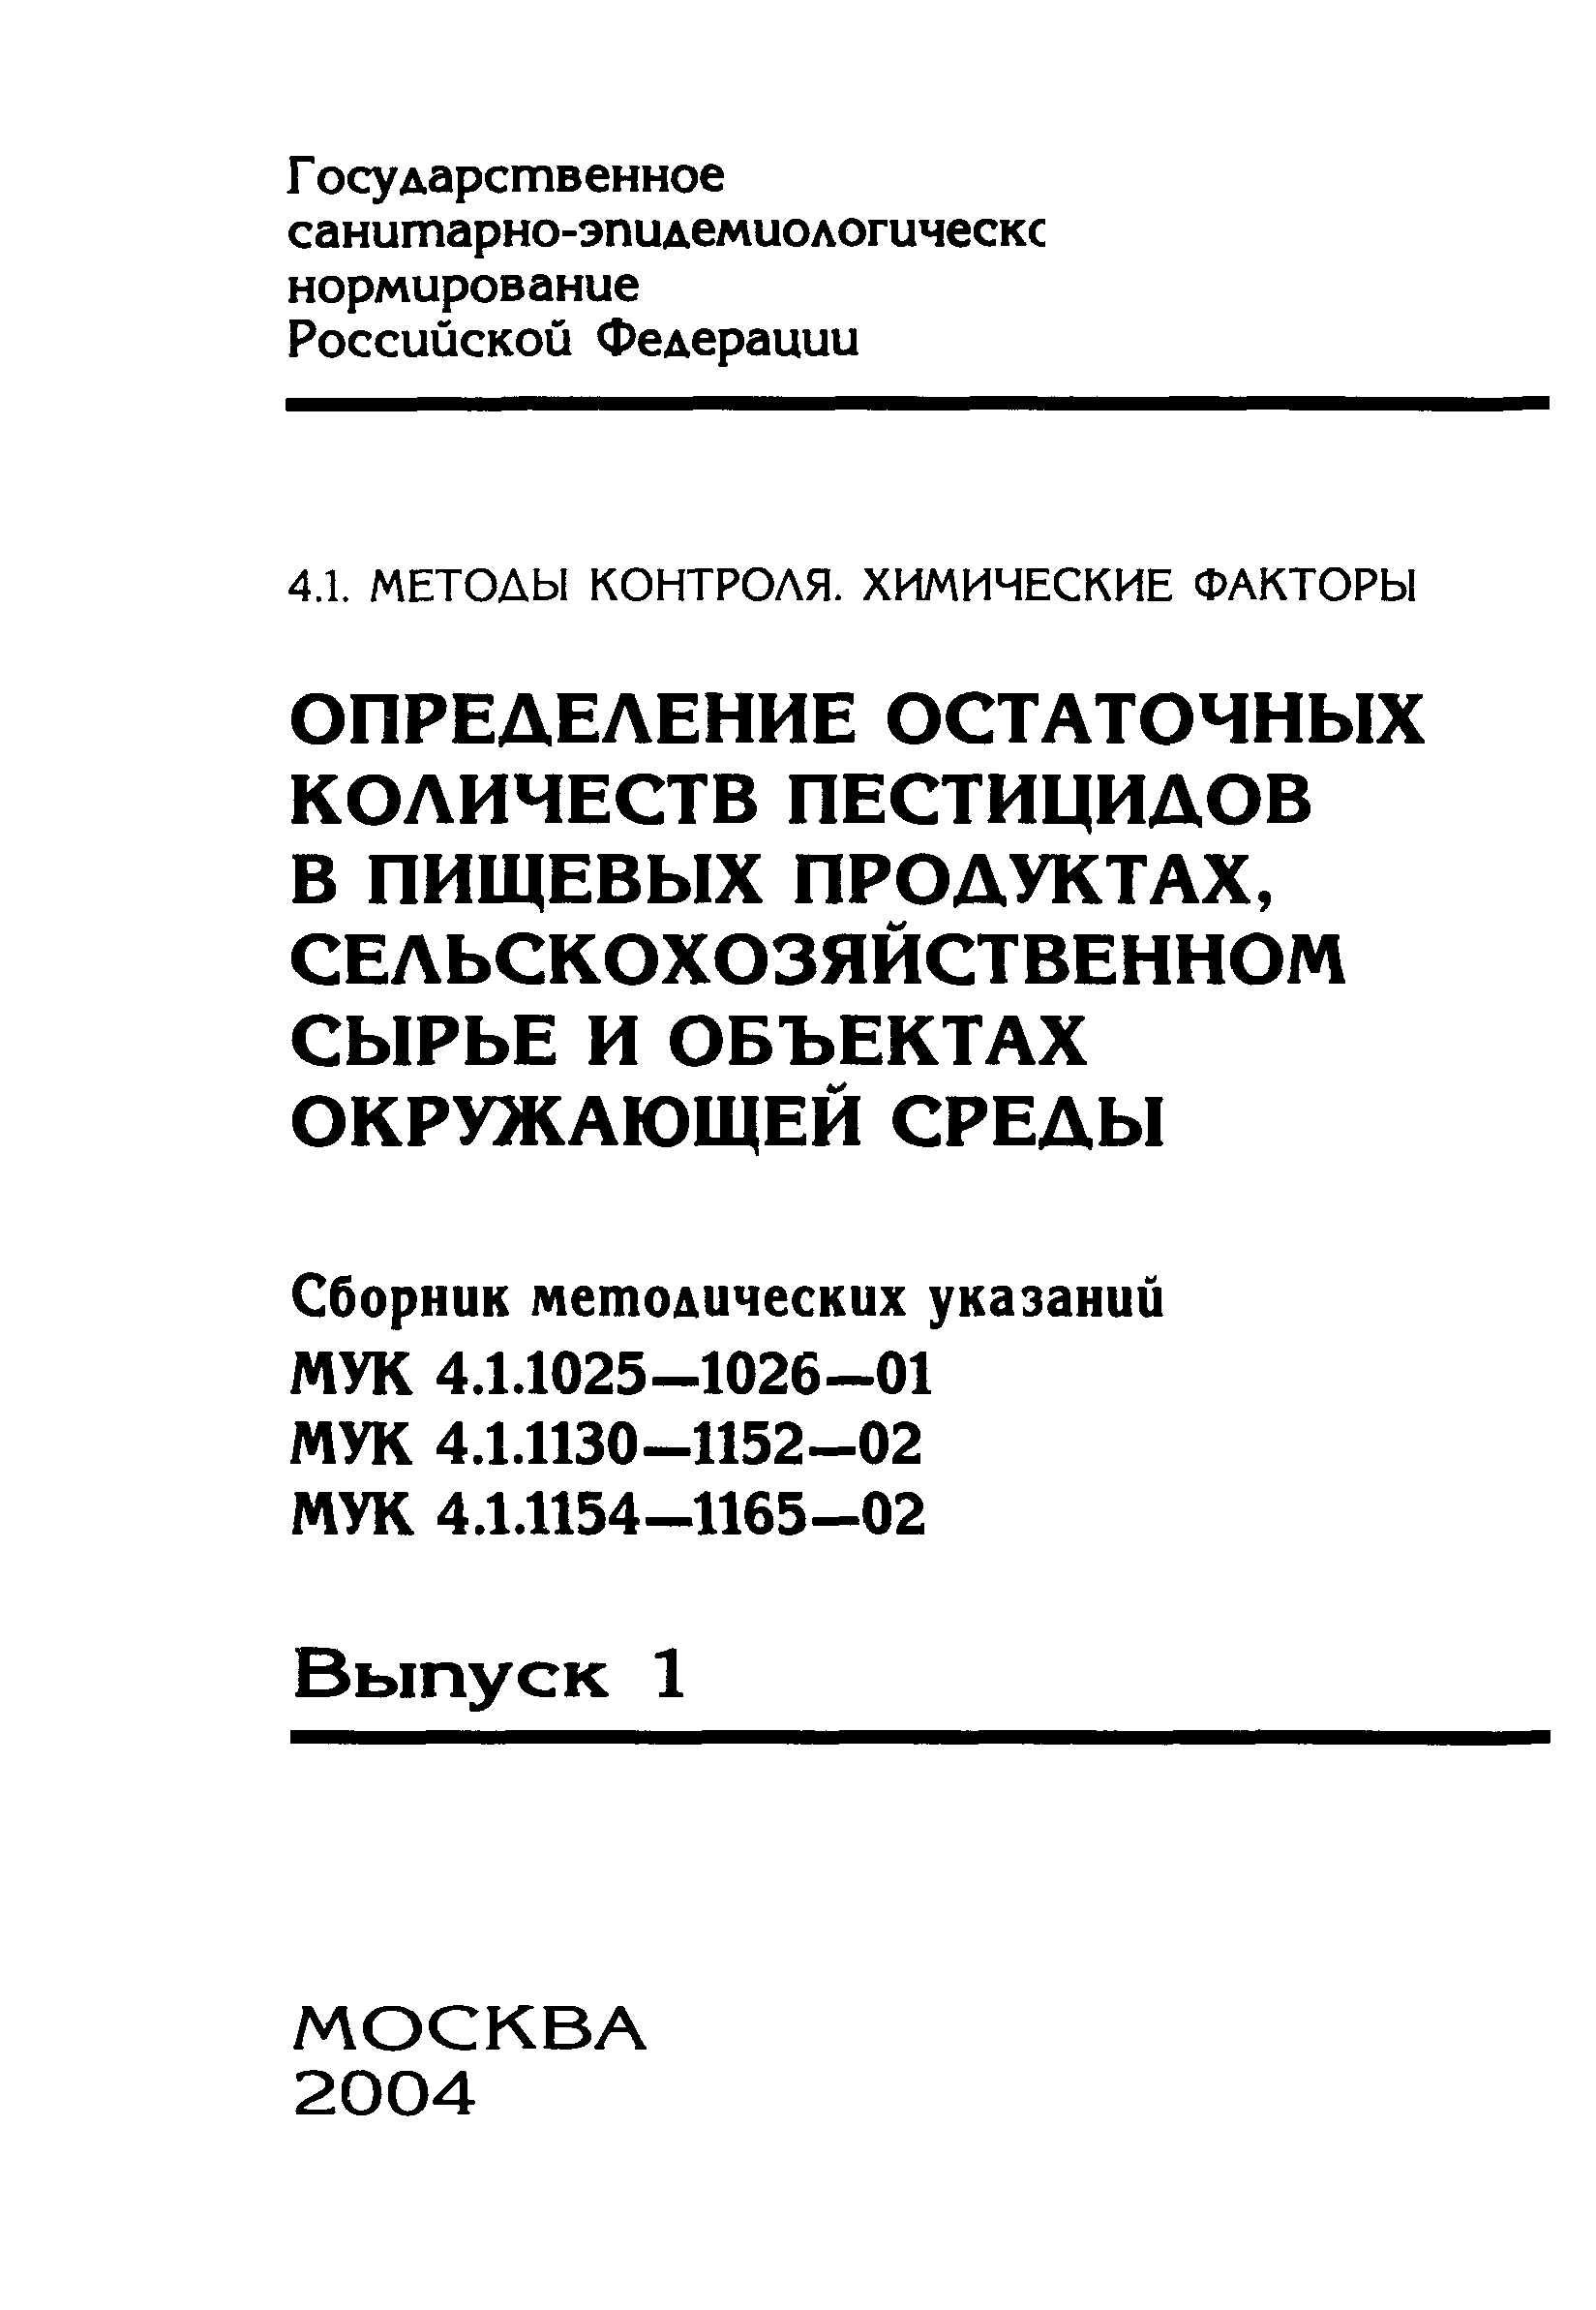 МУК 4.1.1139-02